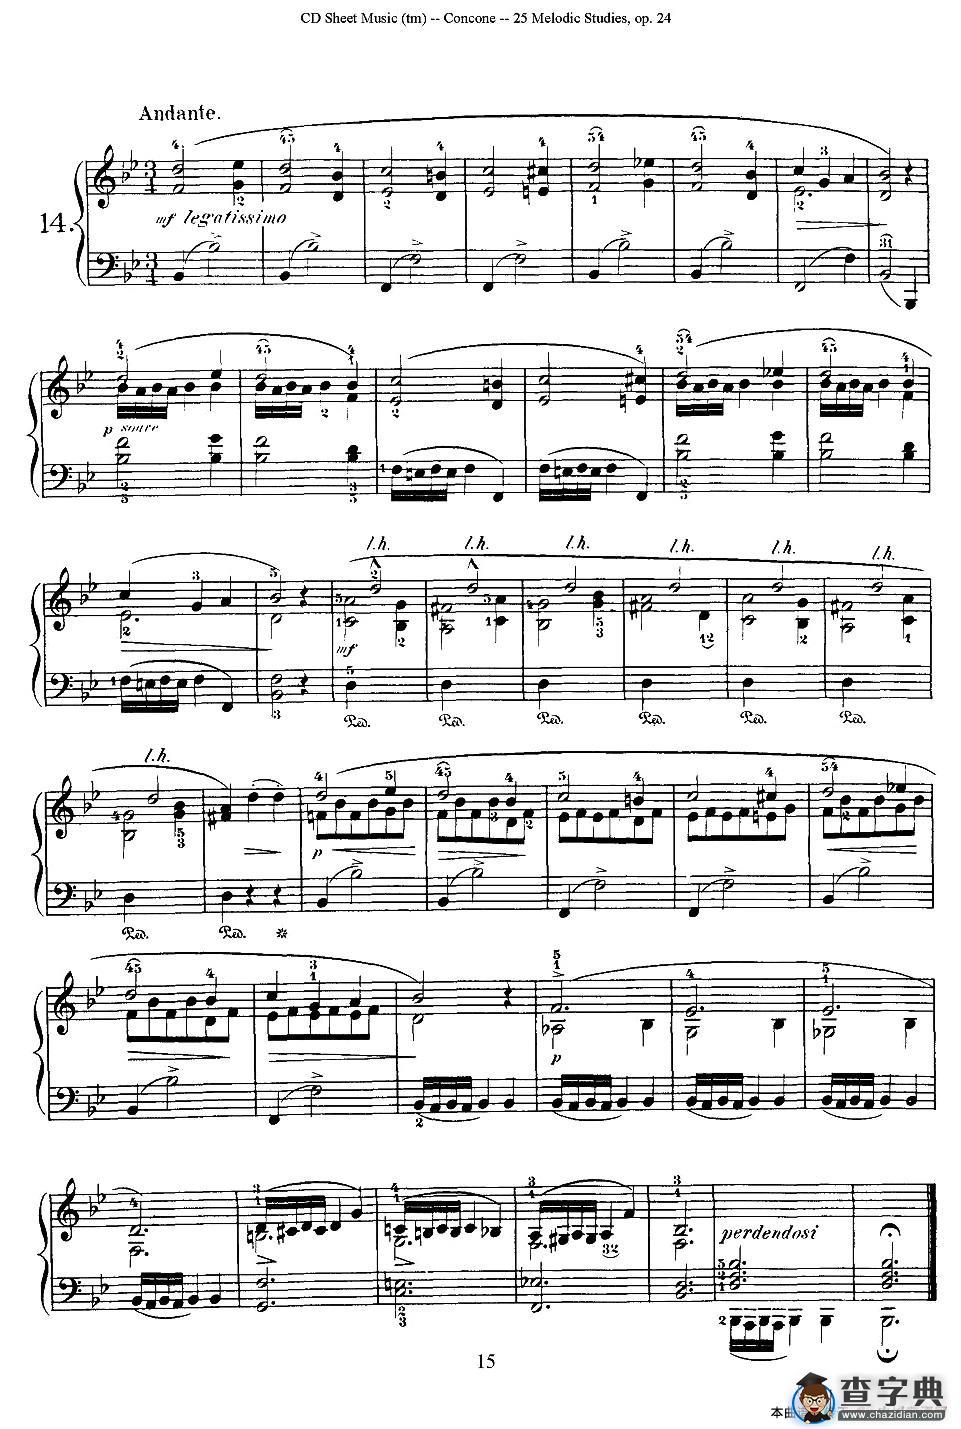 Concone - 25 Melodic Studies easy and progressive（11—15）钢琴谱